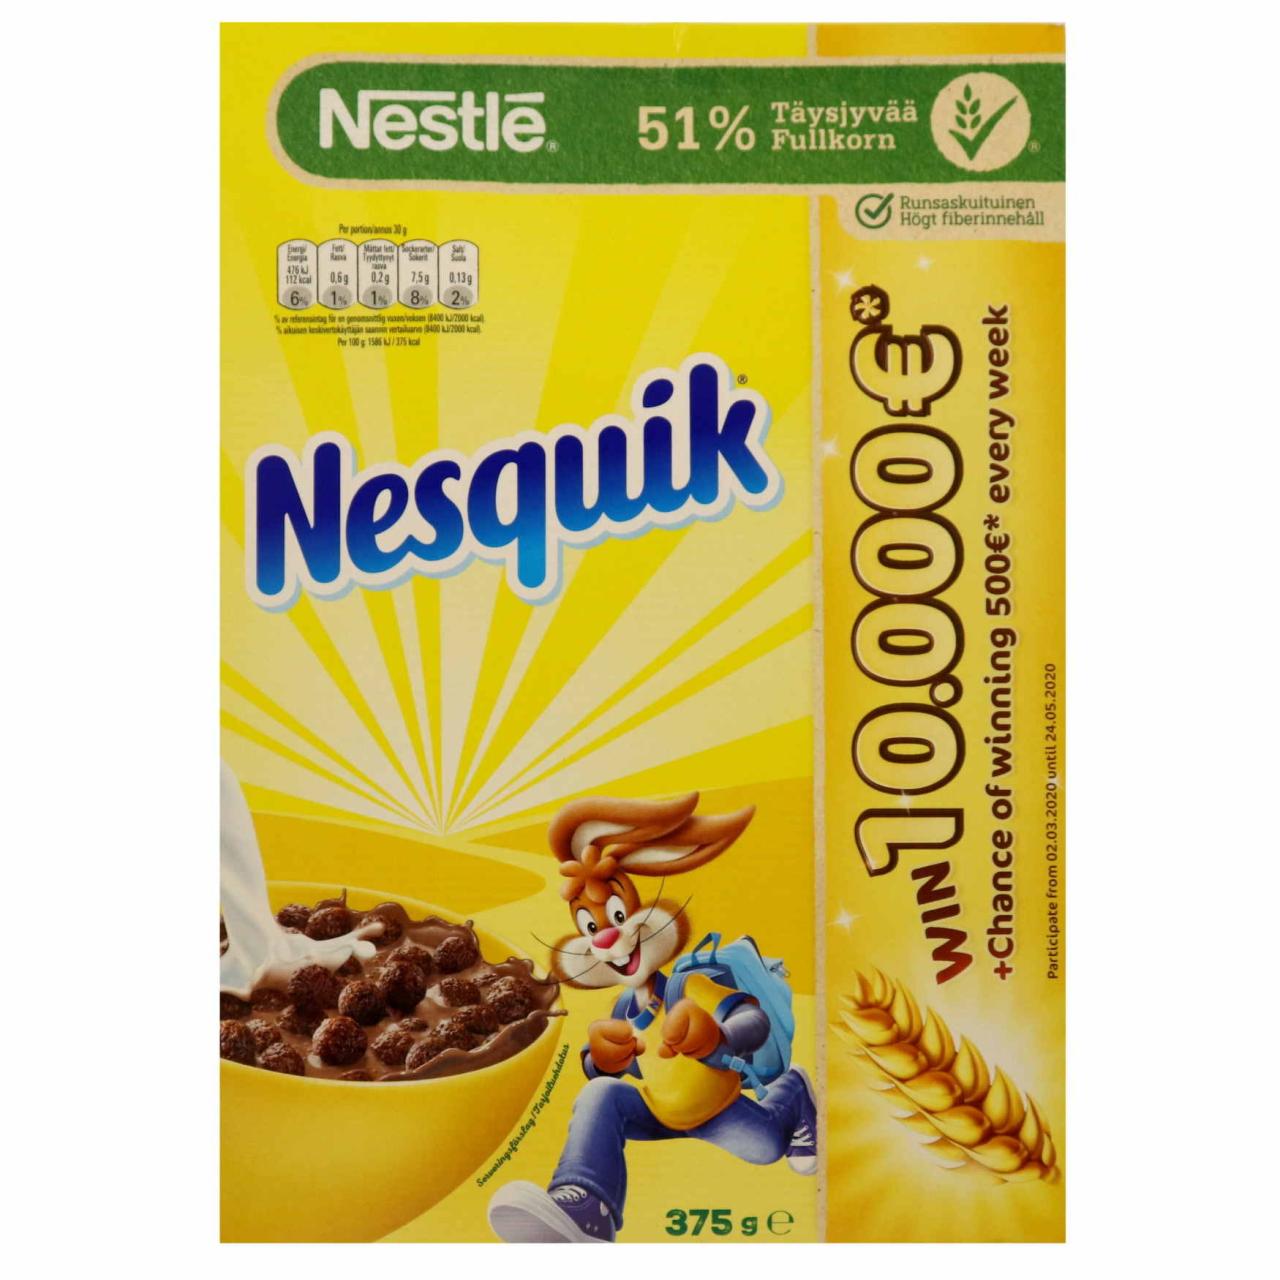 *Nestle Nesquik Morgenmad 375g